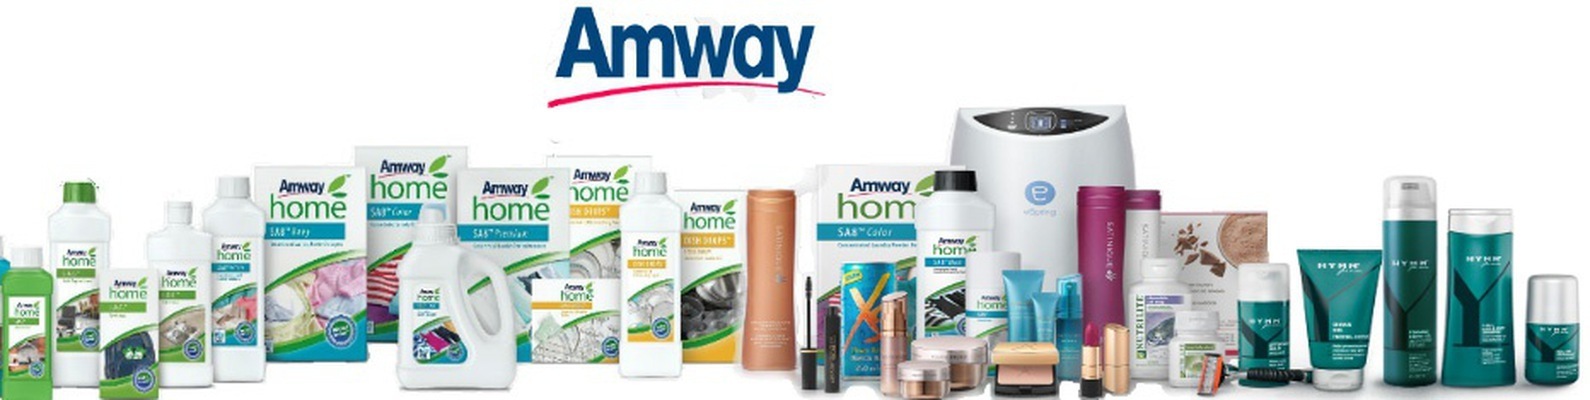 Как найти лучшие предложения в магазине Amway